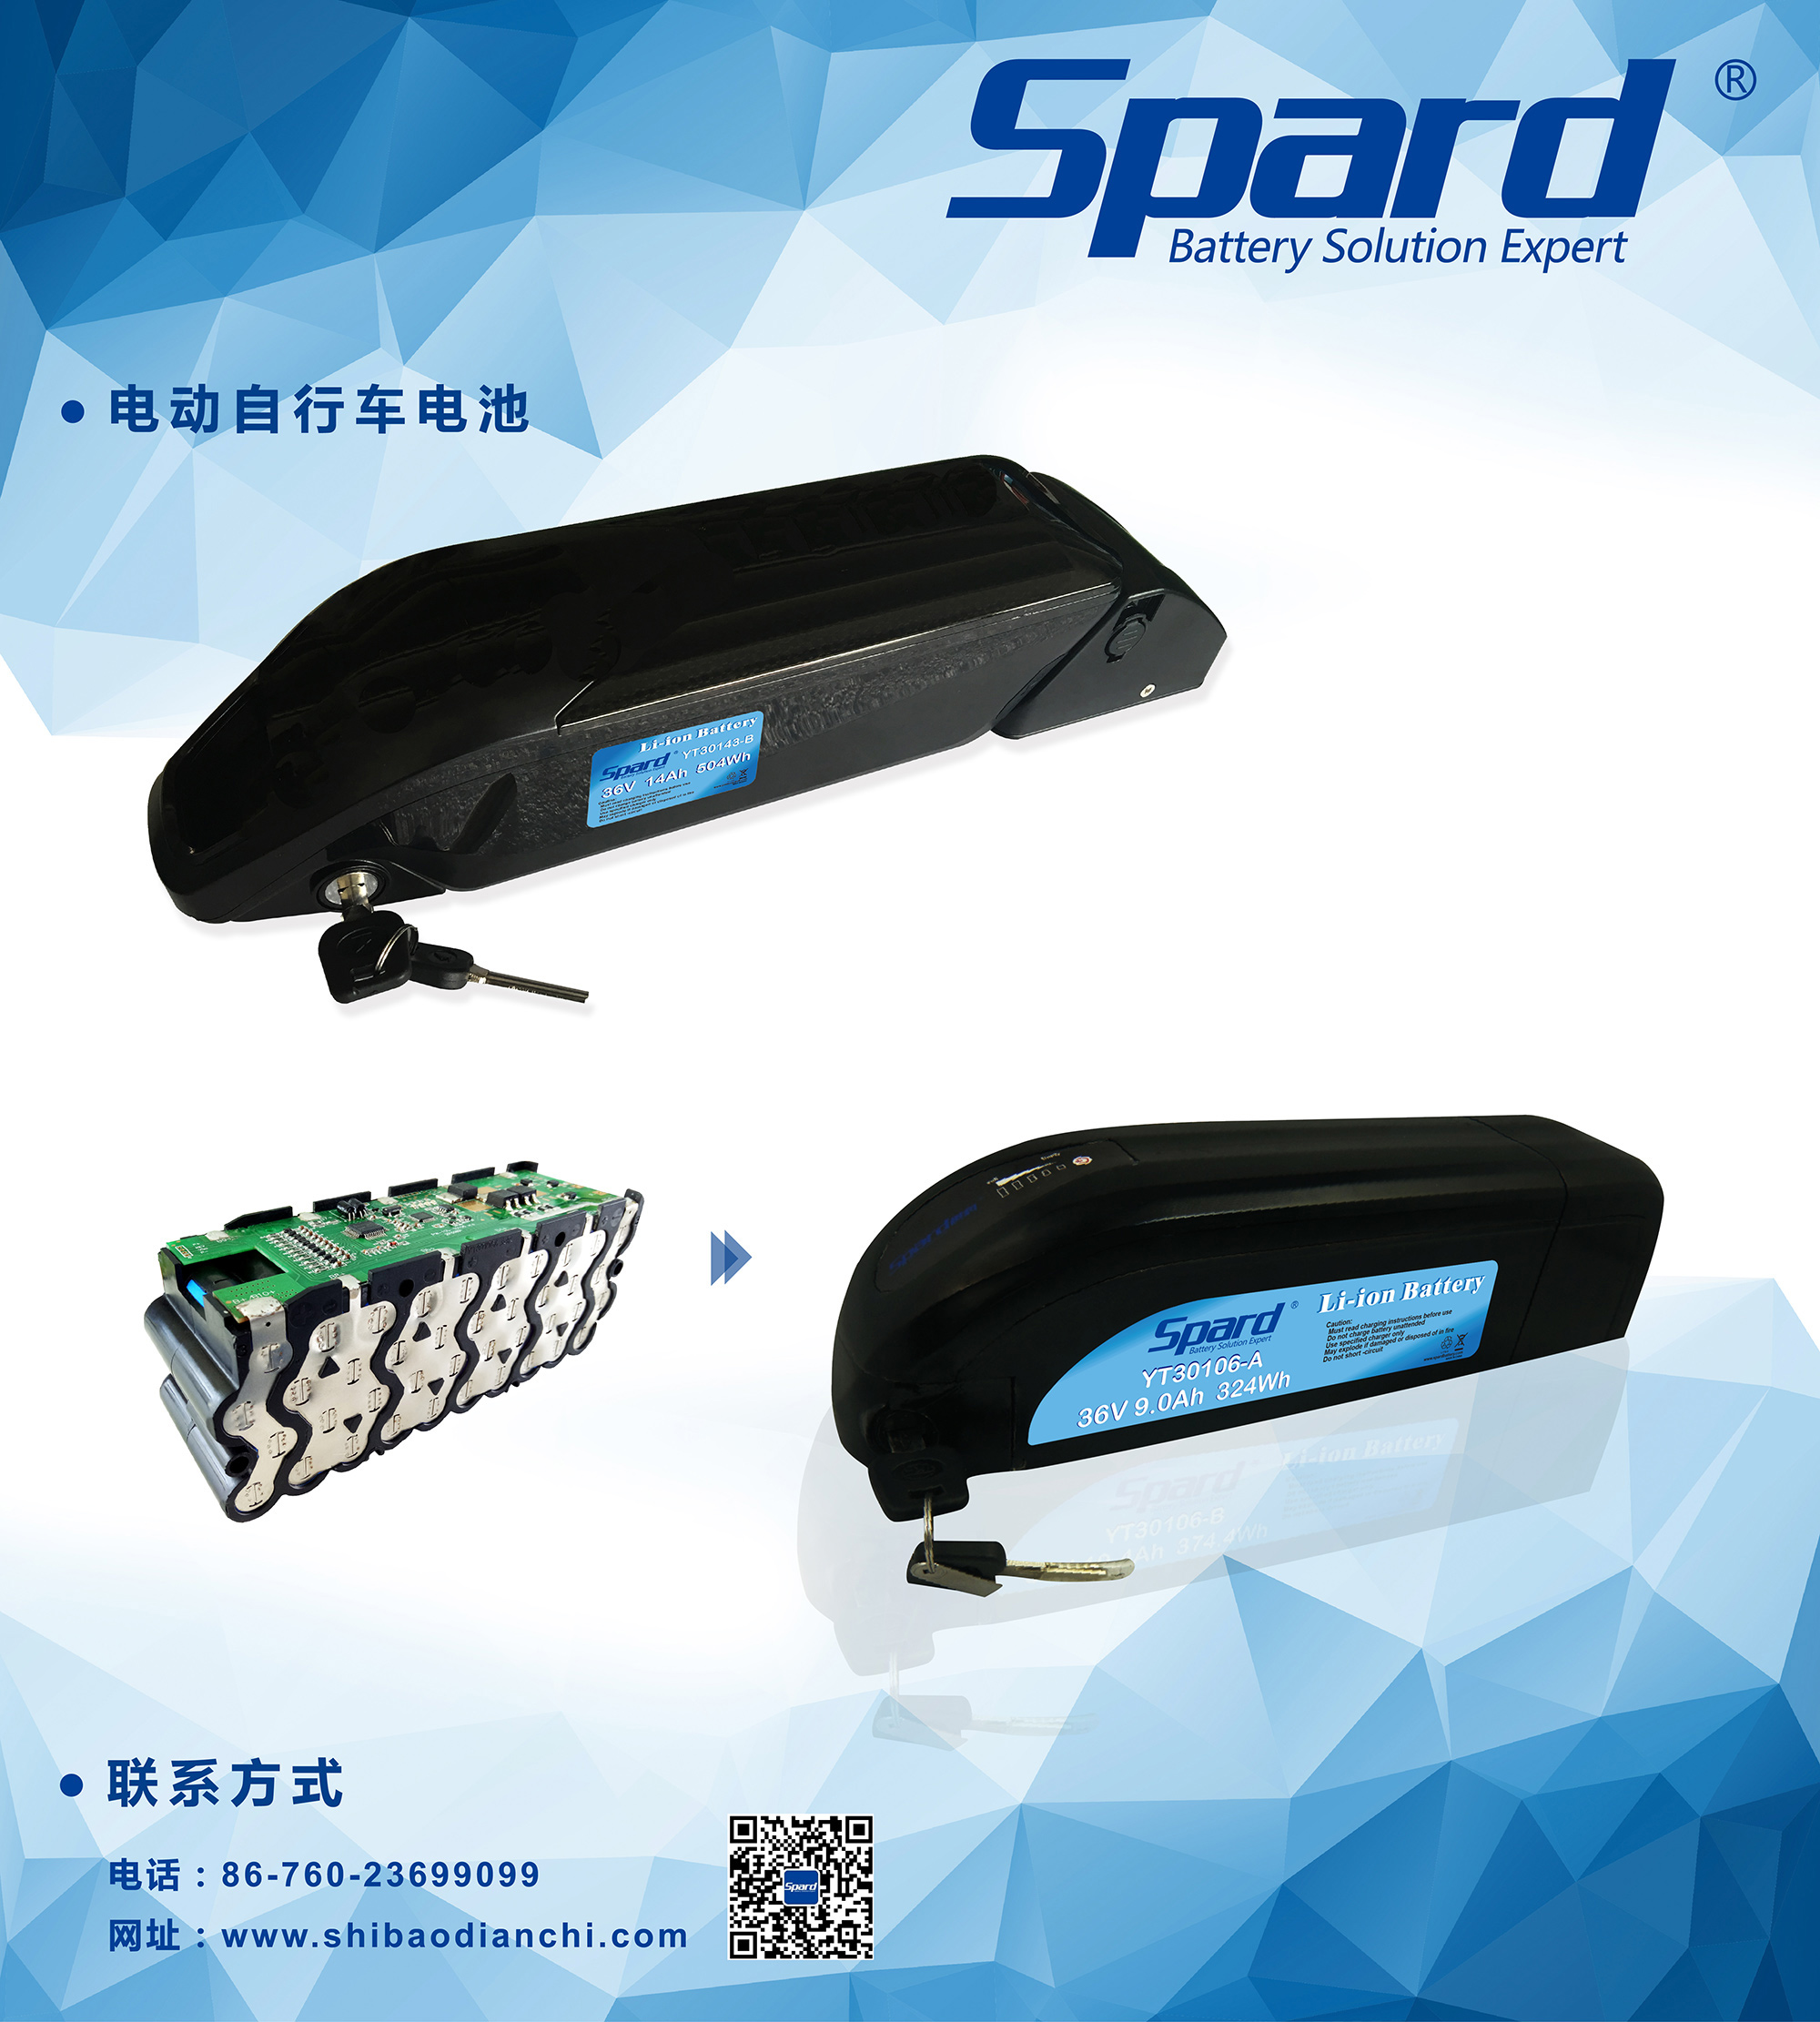 电动自行车电池-900(w)x1000(h)mm_平衡车+滑板车电池